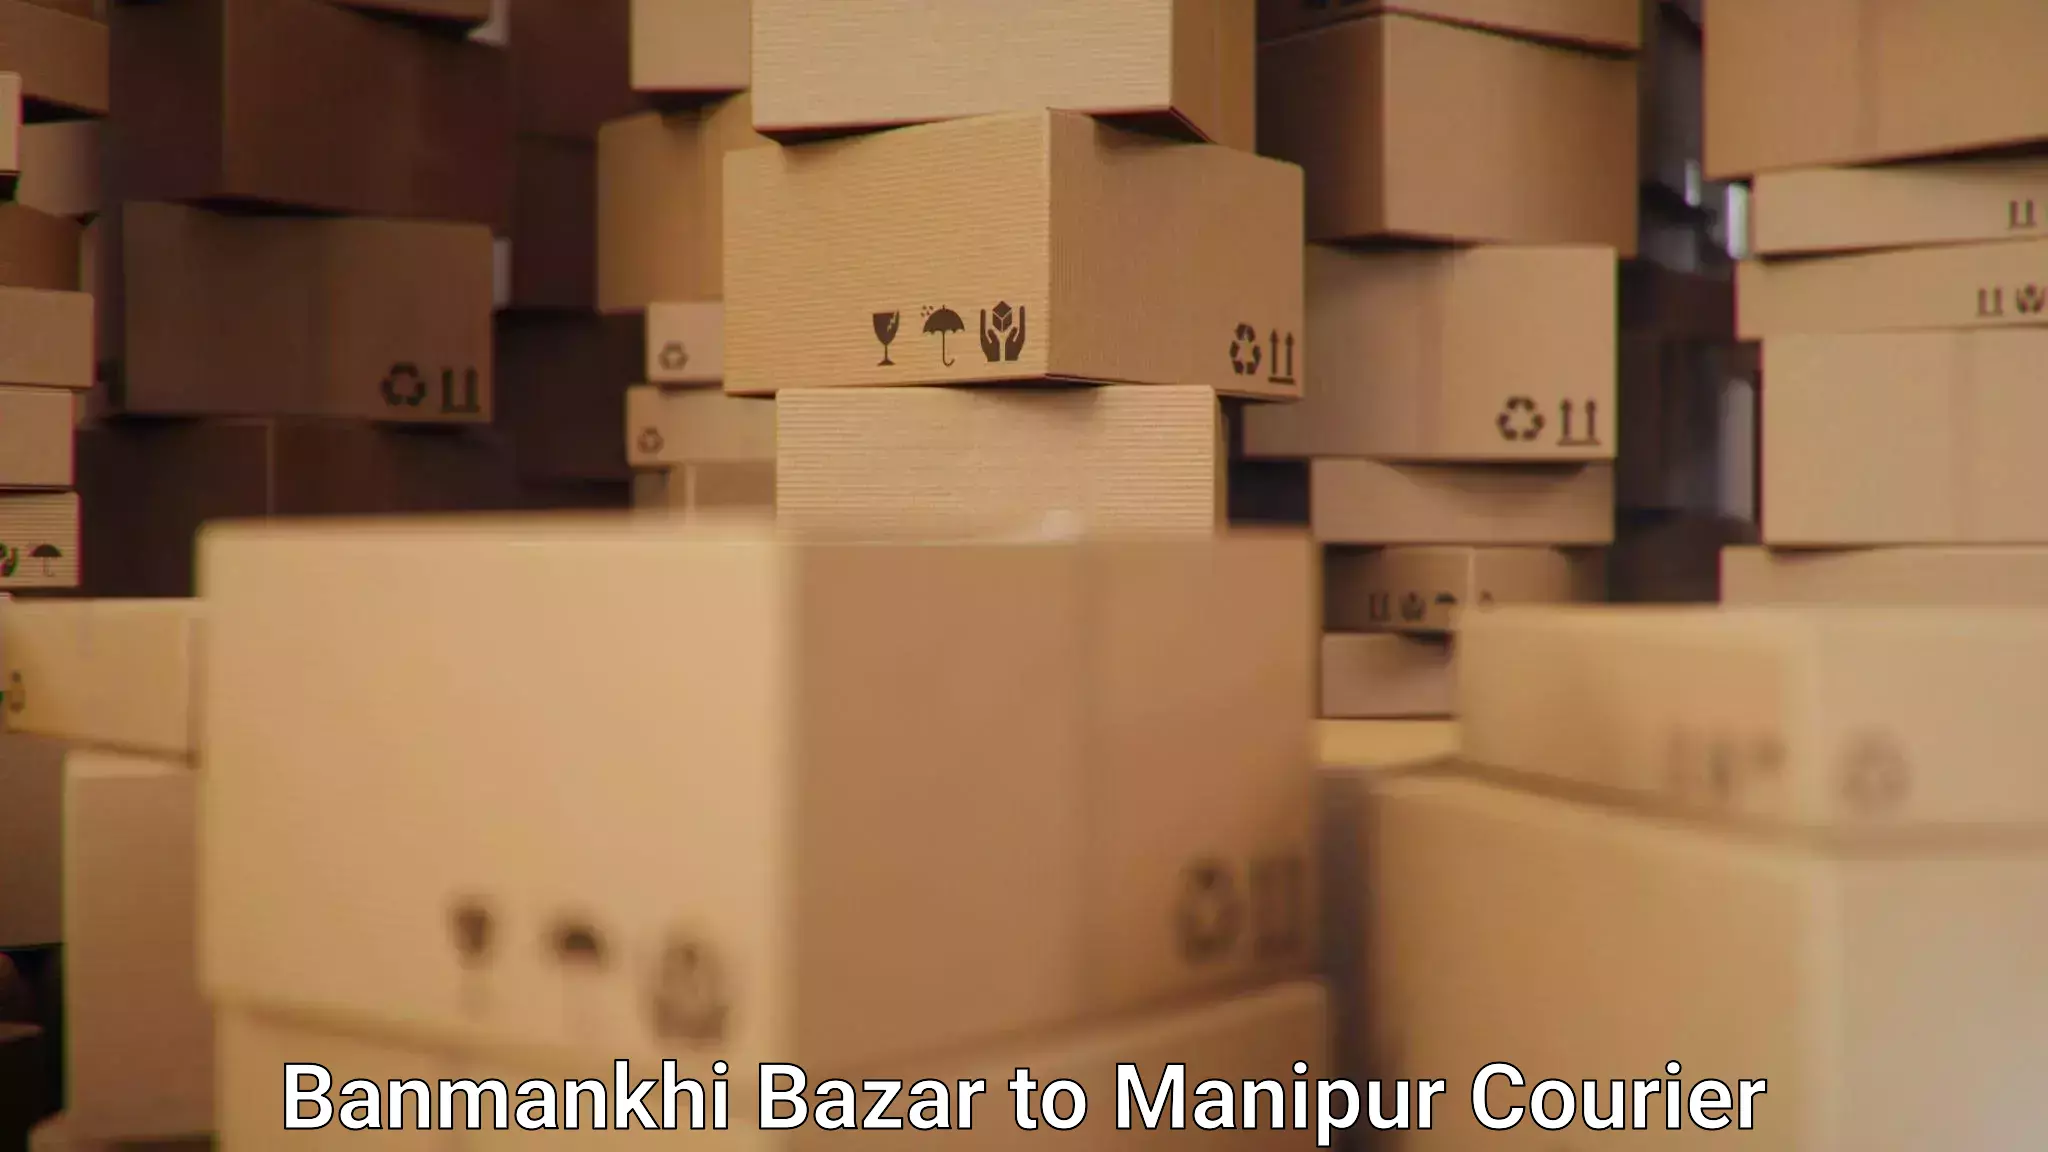 User-friendly delivery service Banmankhi Bazar to Kanti